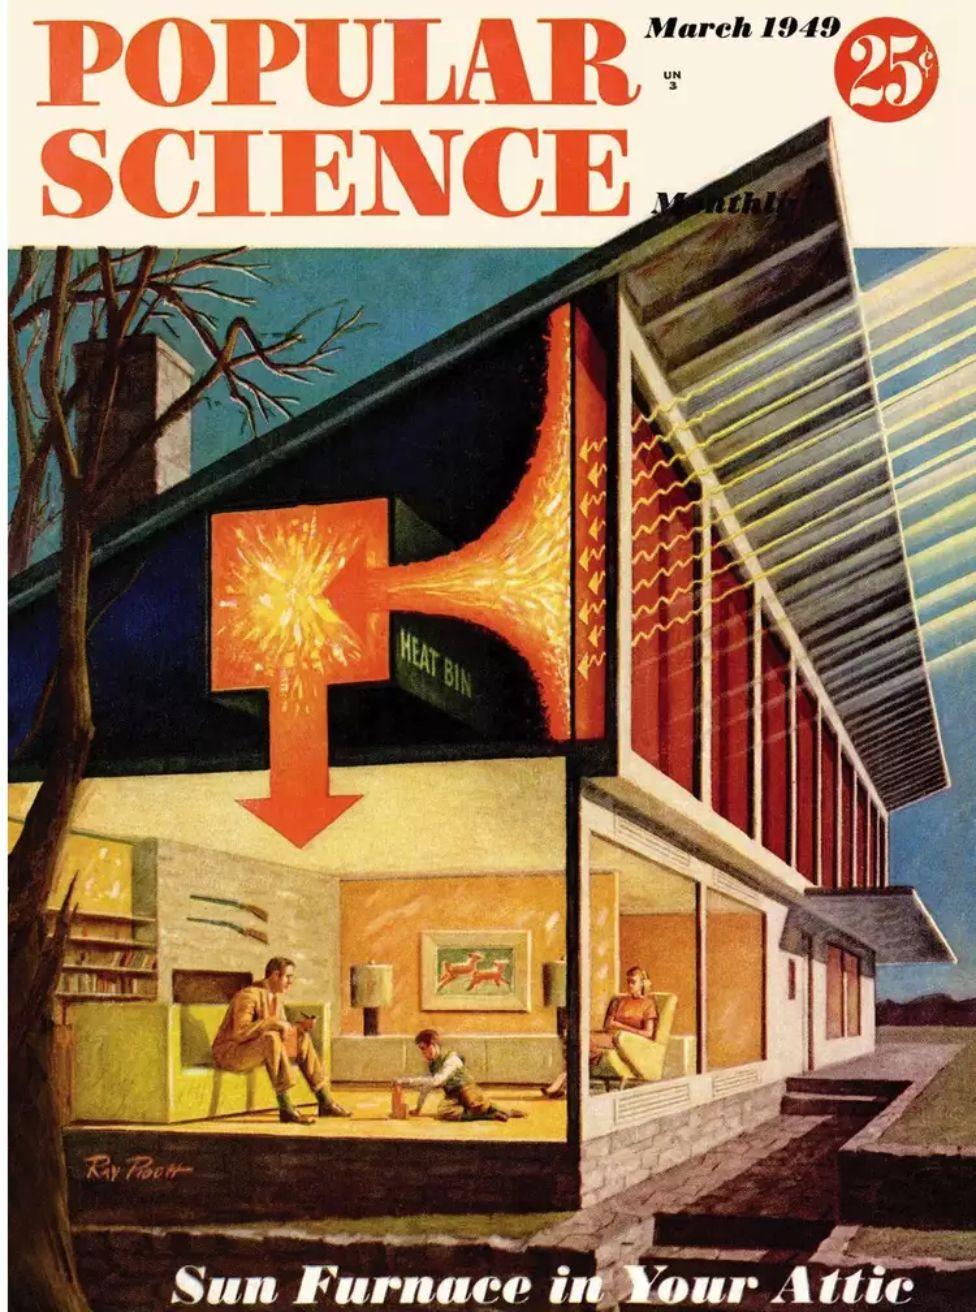 Portada de la revista Popular Science con ilustración de la casa